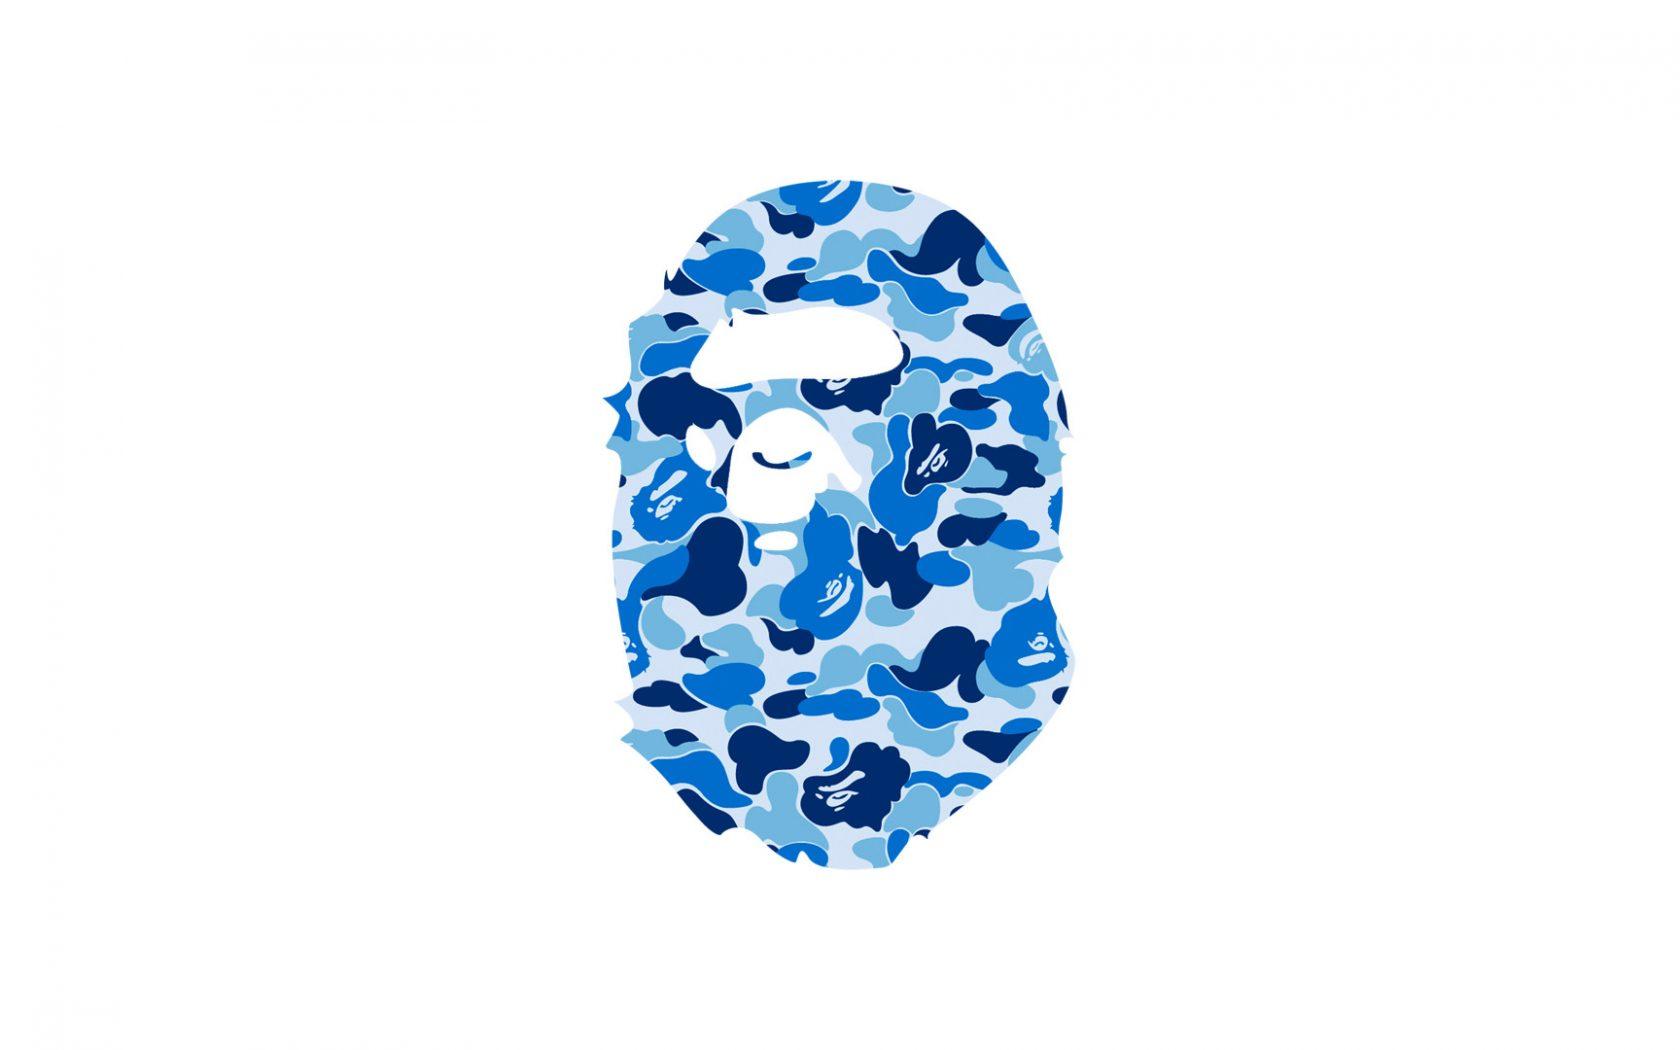 Cool BAPE Logo - Cool Bathing Ape Logo Wallpaper In Plain White Background | PaperPull